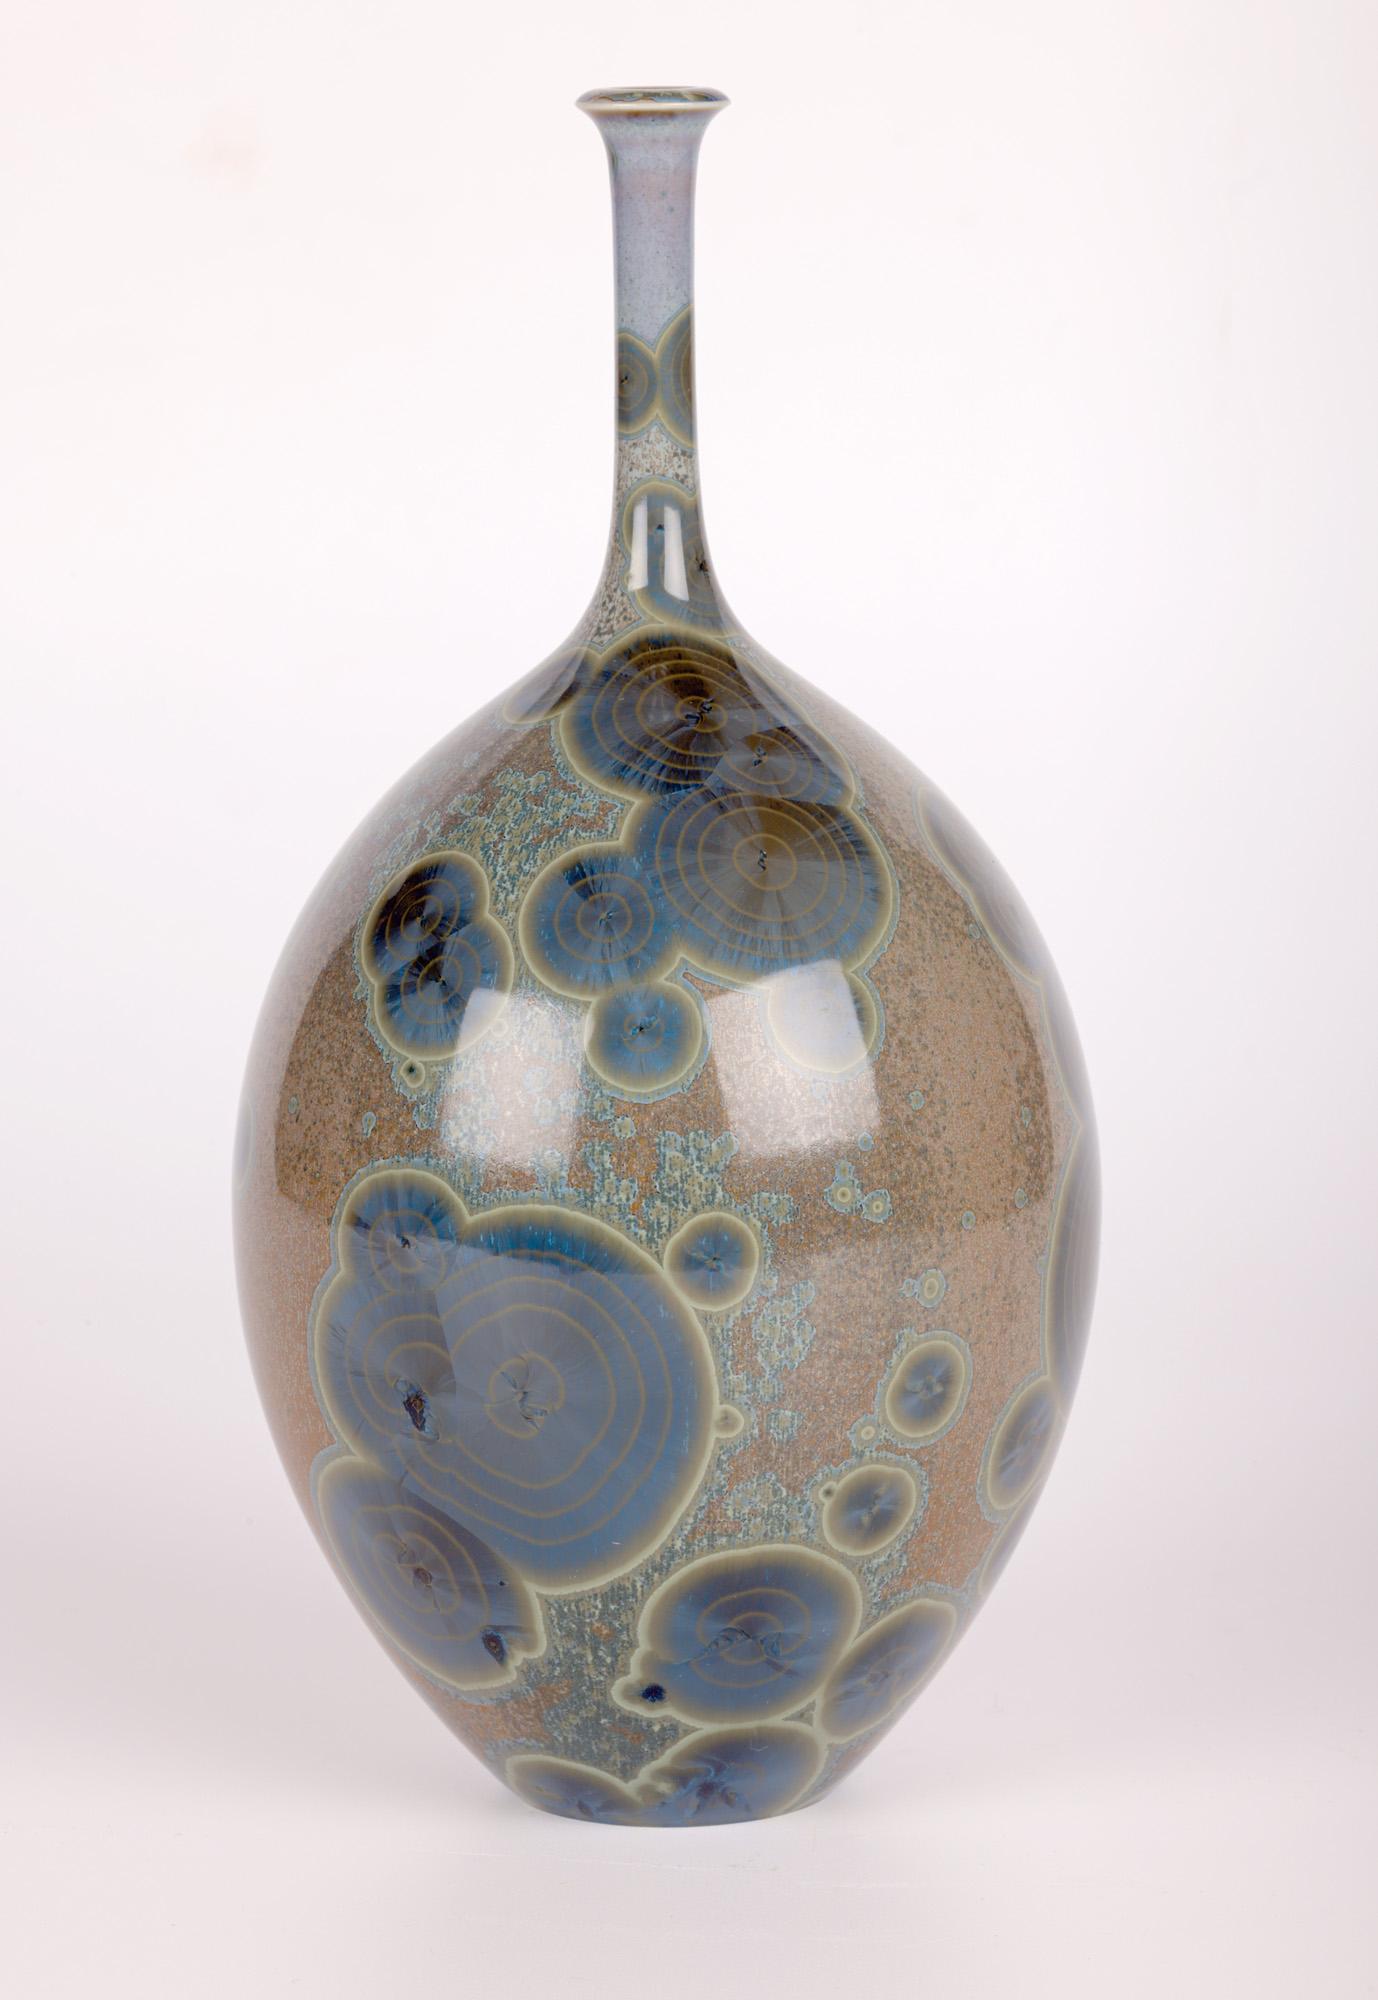 Peter Ilsley Crystalline Glazed Studio Pottery Porcelain Bottle Vase In Good Condition For Sale In Bishop's Stortford, Hertfordshire